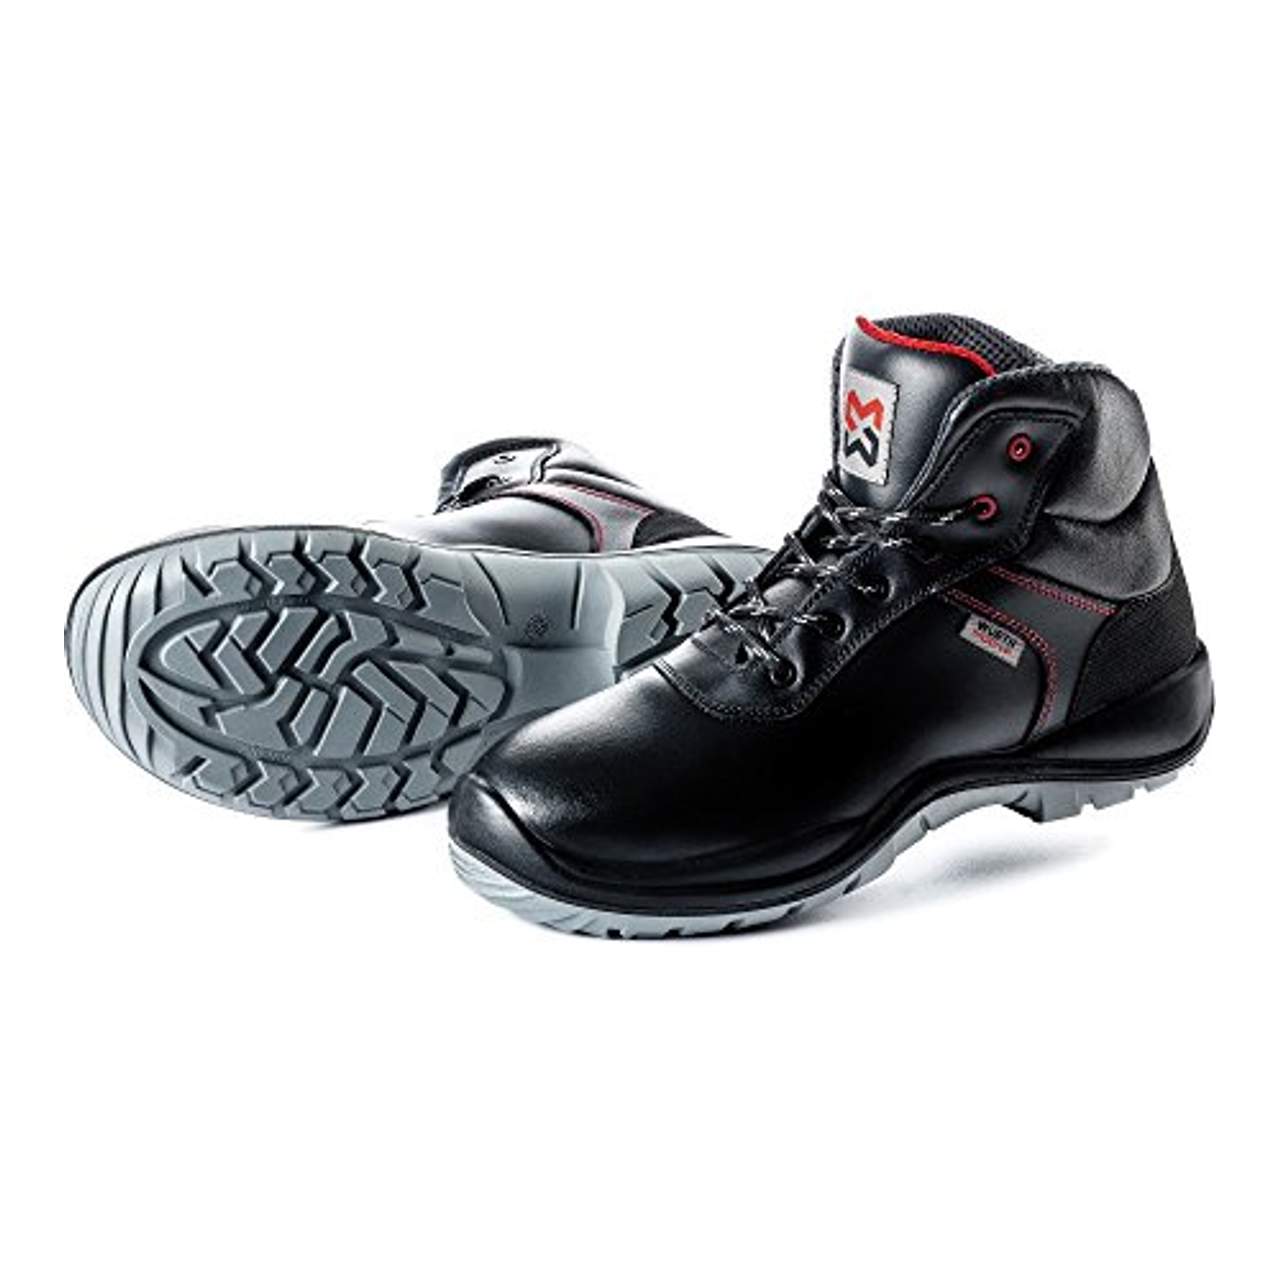 WÜRTH MODYF Sicherheitsstiefel S3 SRC Eco schwarz: Der zertifizierte Schuh ist in Größe